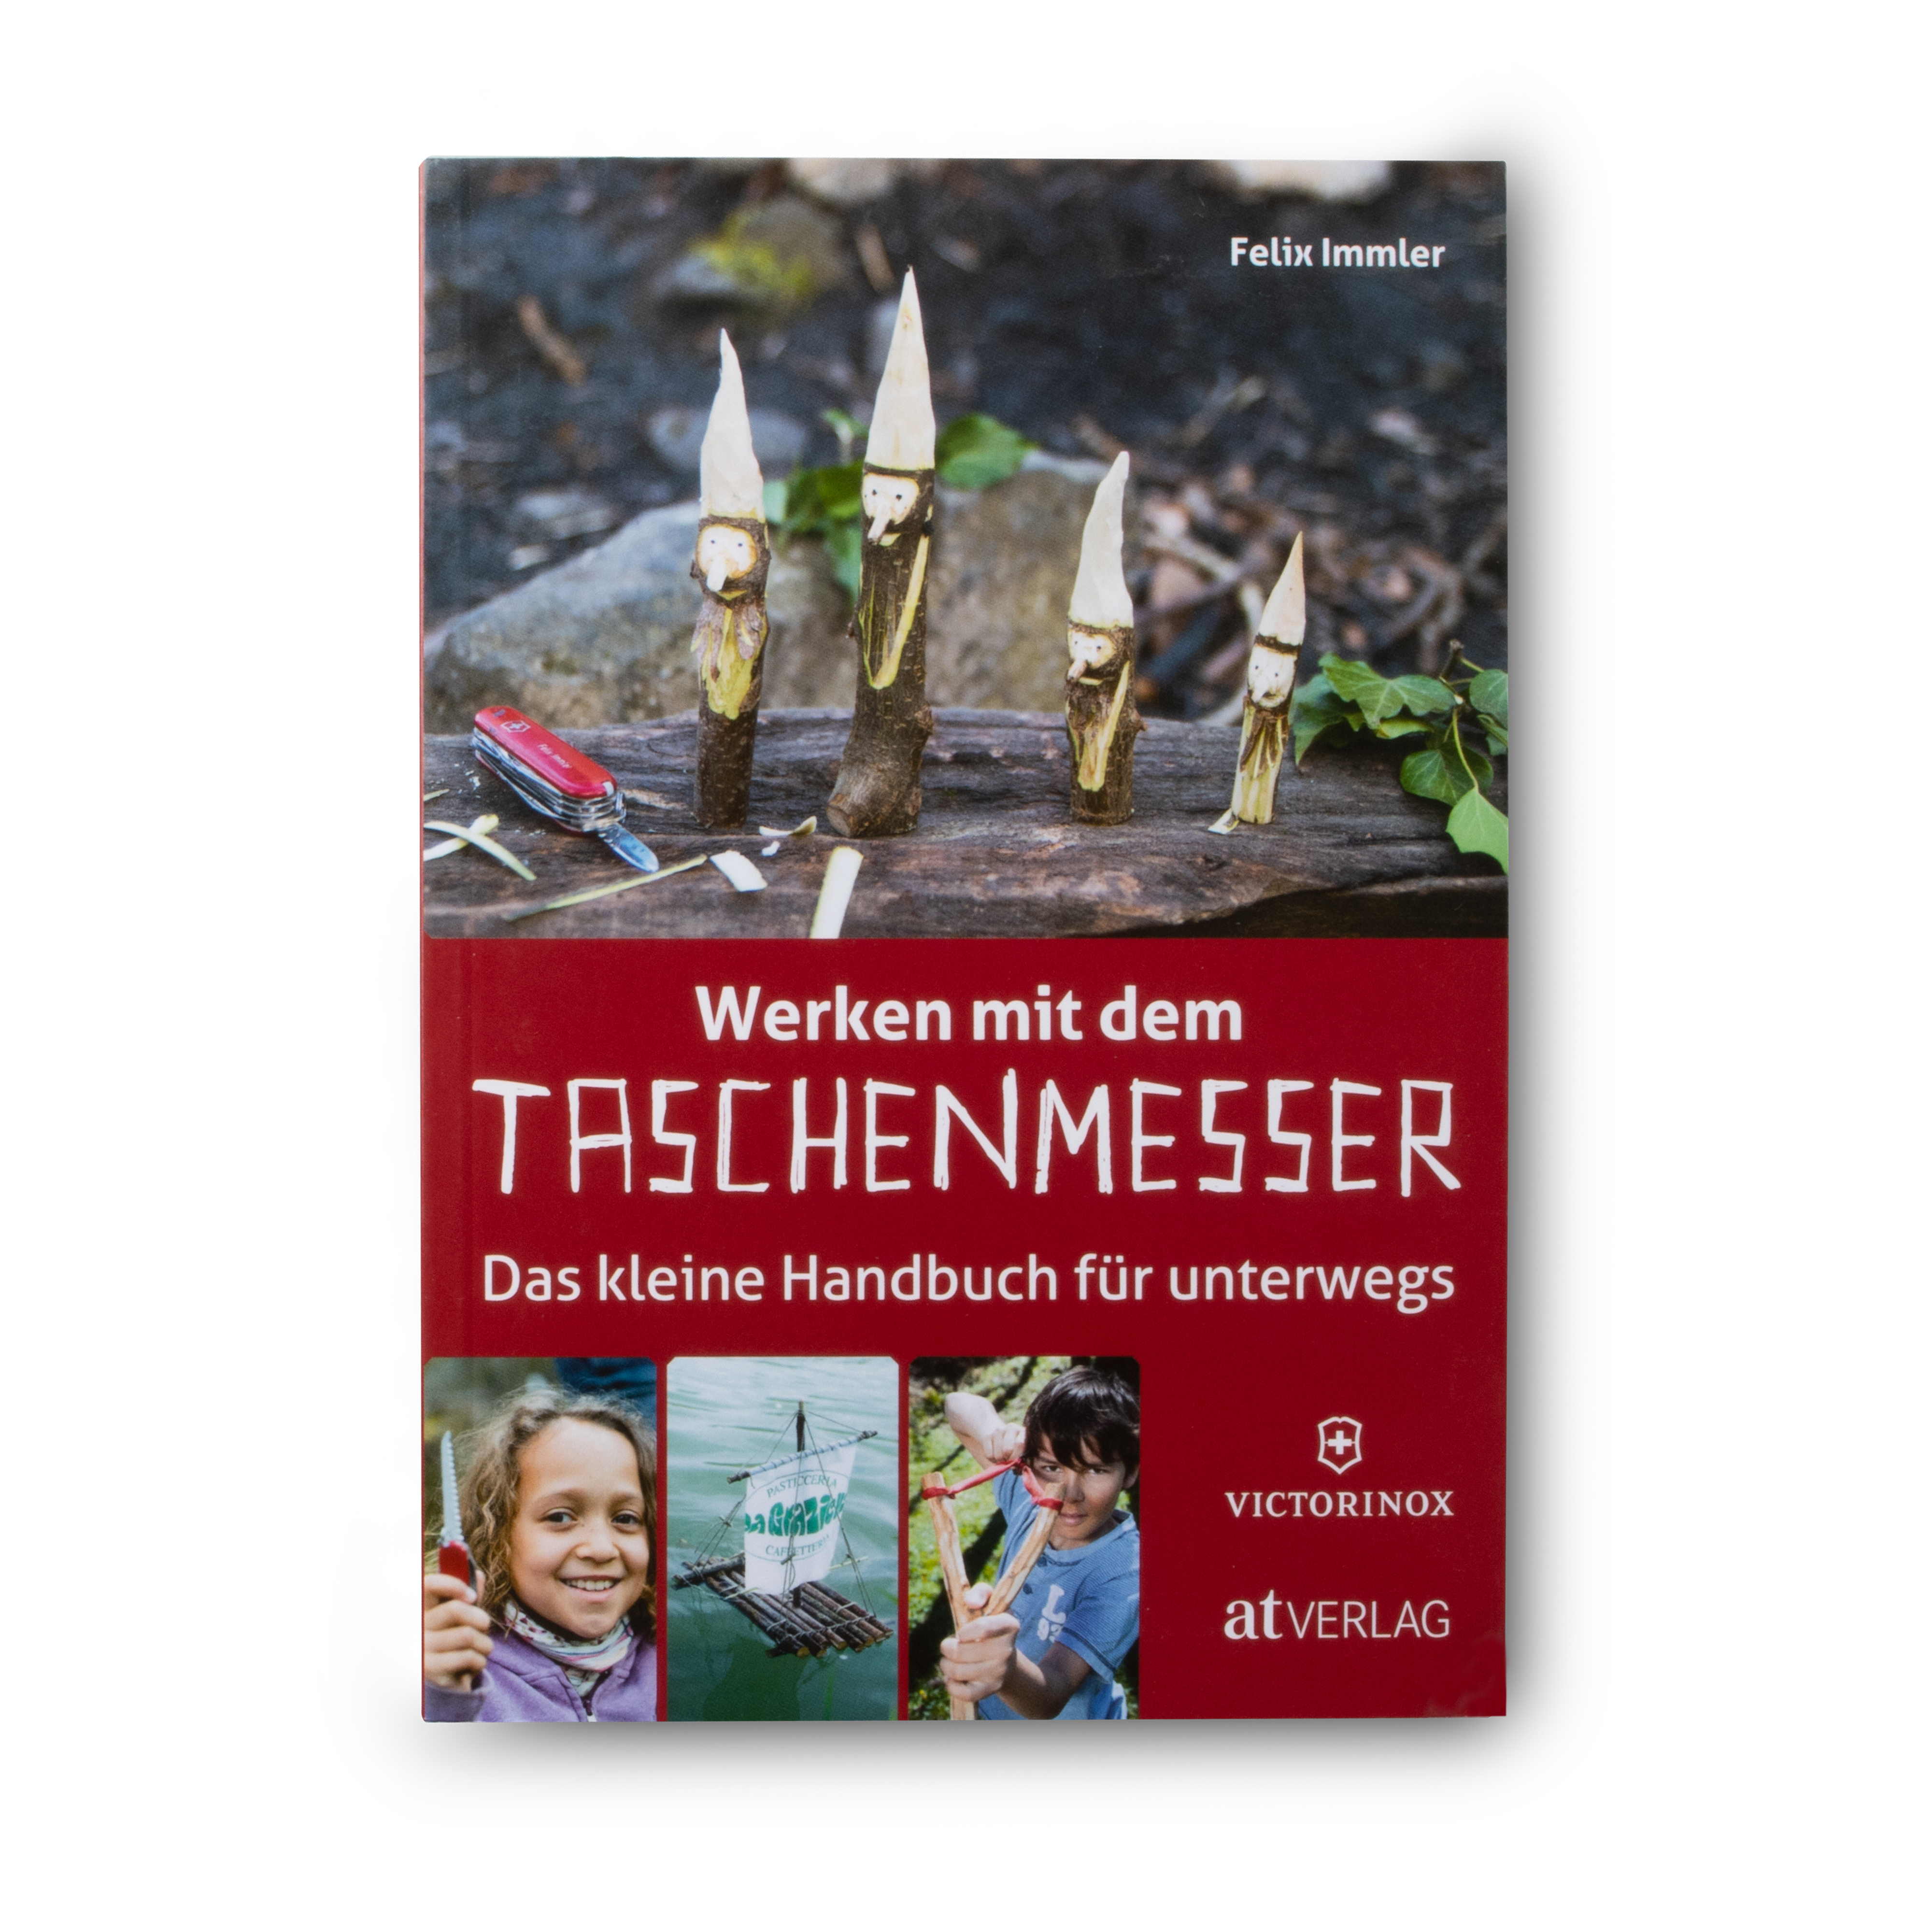 Victorinox Buch "Werken mit dem Taschenmesser", deutsch